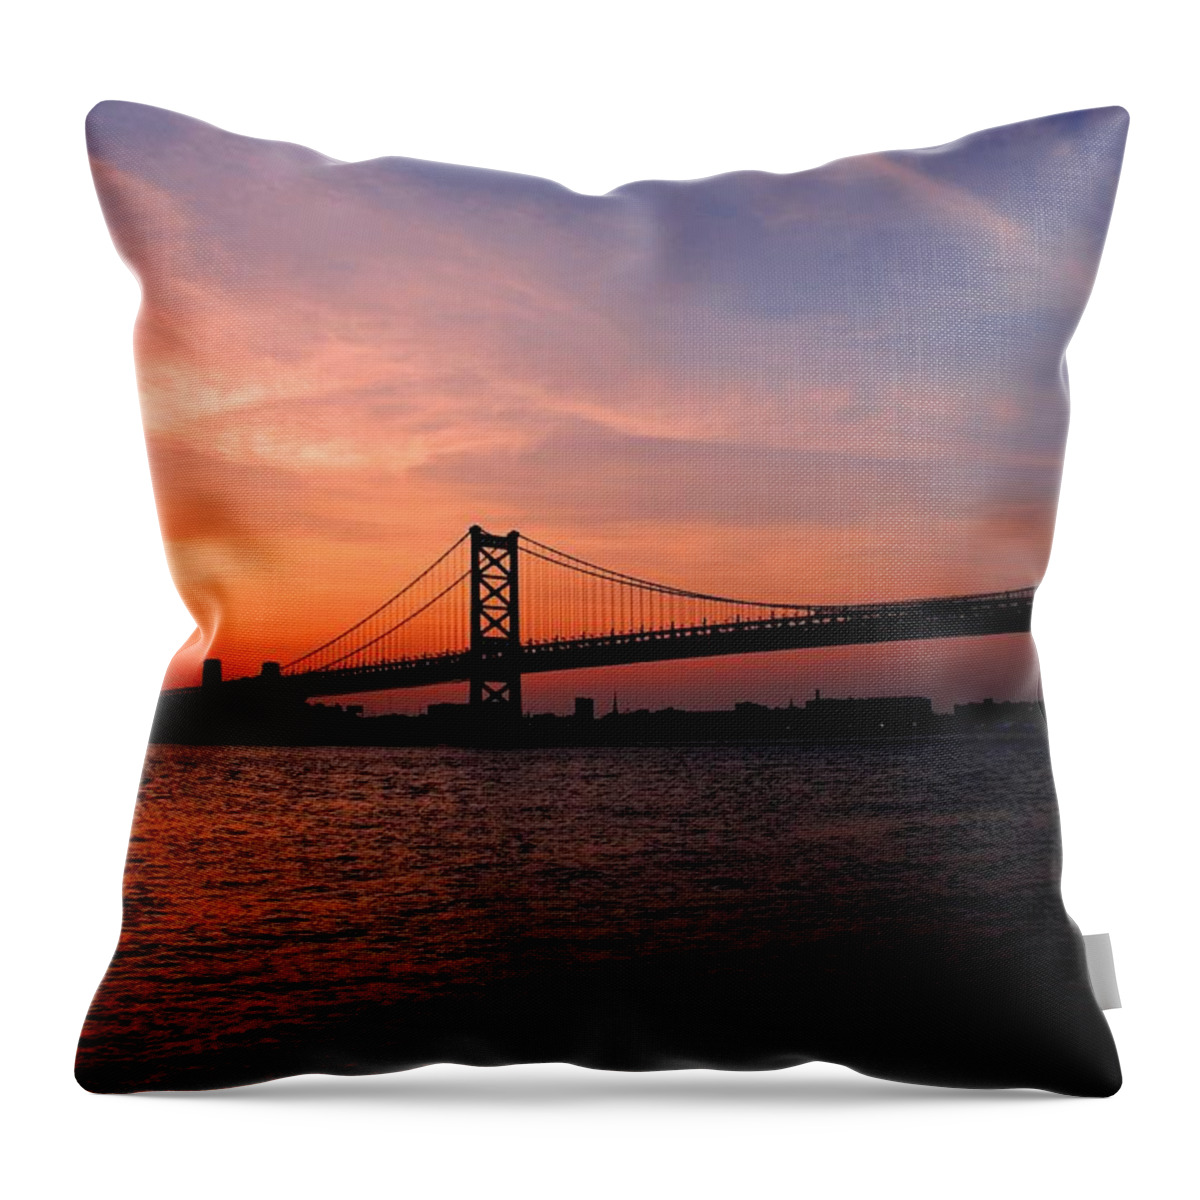 Philadelphia Throw Pillow featuring the photograph Ben Franklin Bridge Sunset by Matt Quest